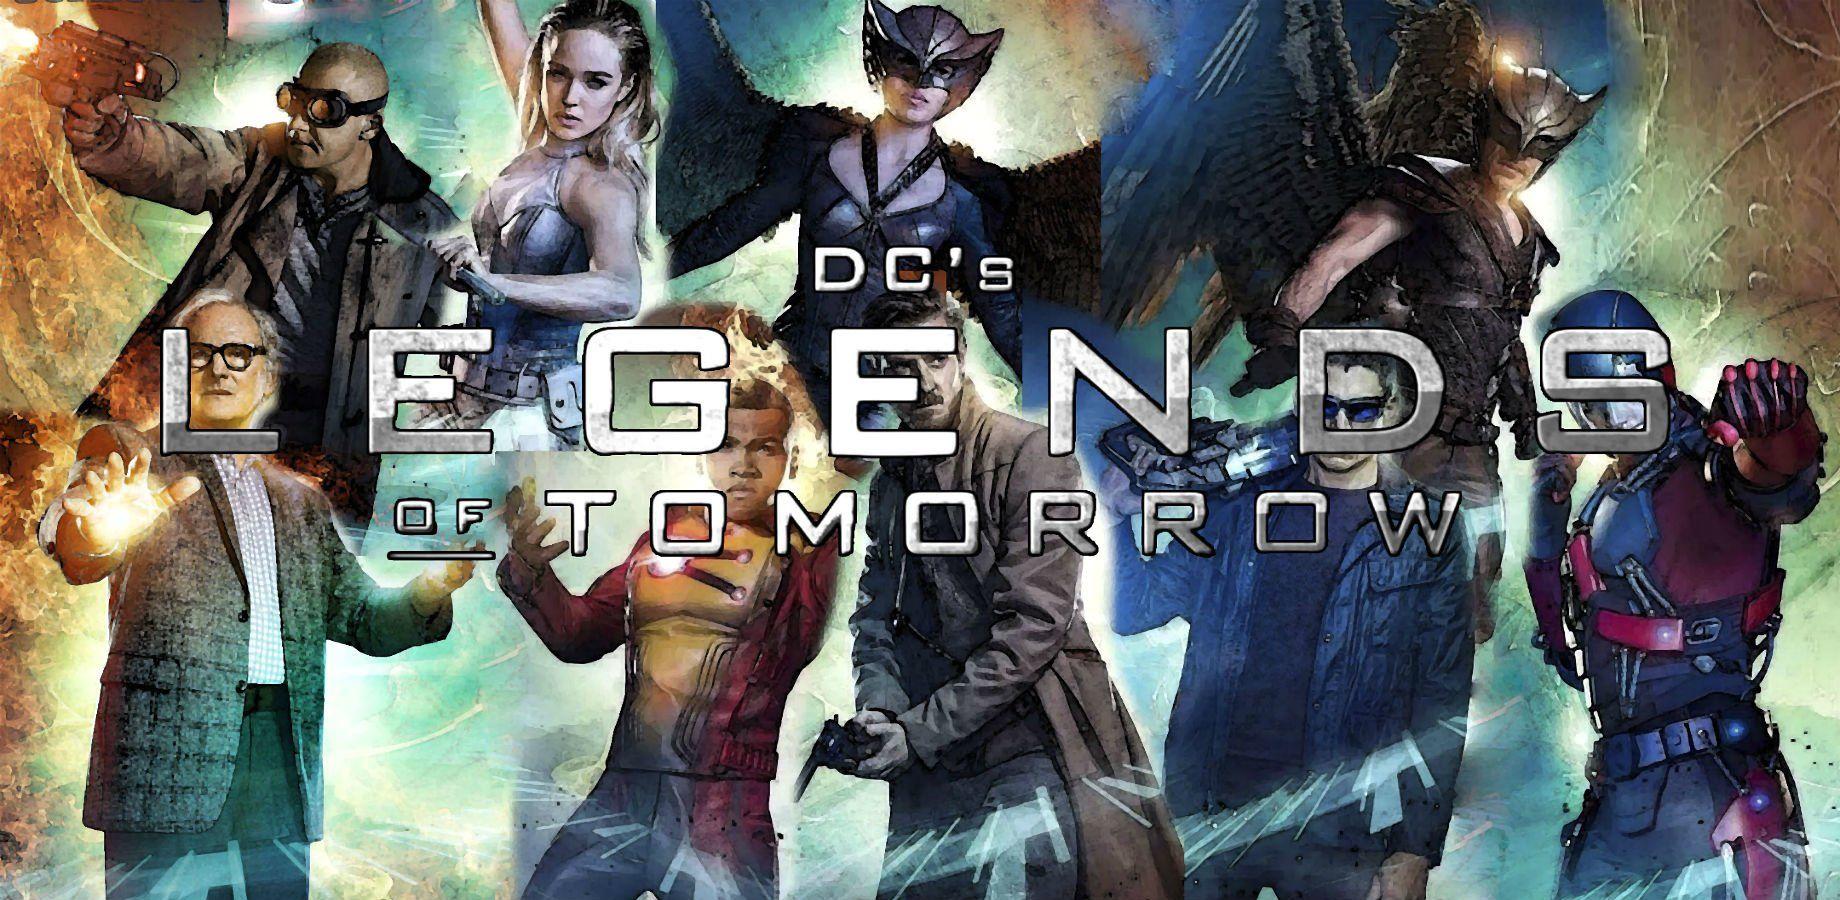 DC's Legends Of Tomorrow HD Wallpaper